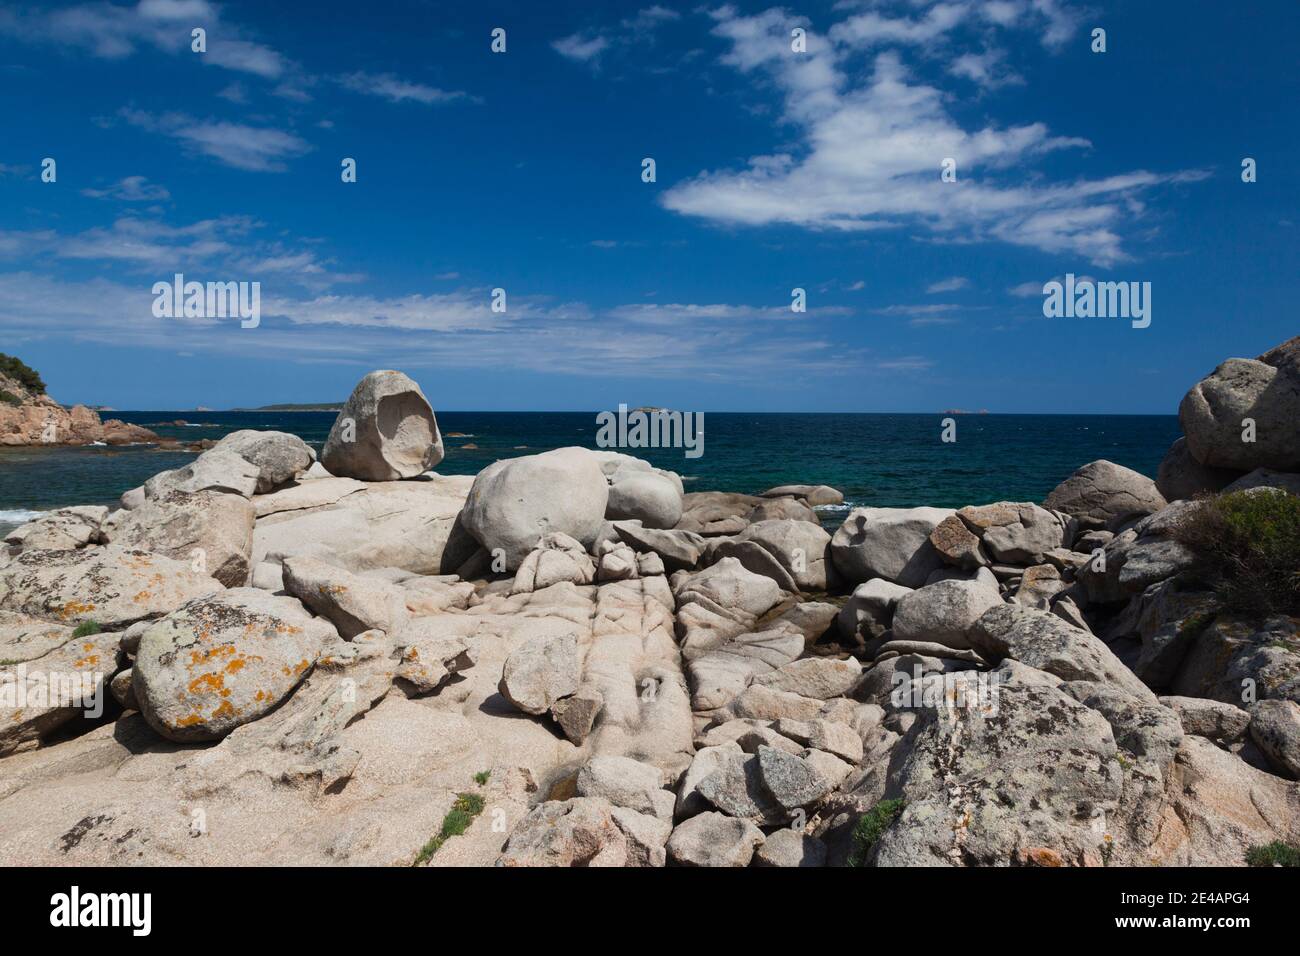 Formations rocheuses sur la côte, Tamaricciu, Plage de Palombaggia, Porto Vecchio, Corse-du-Sud, Corse, France Banque D'Images